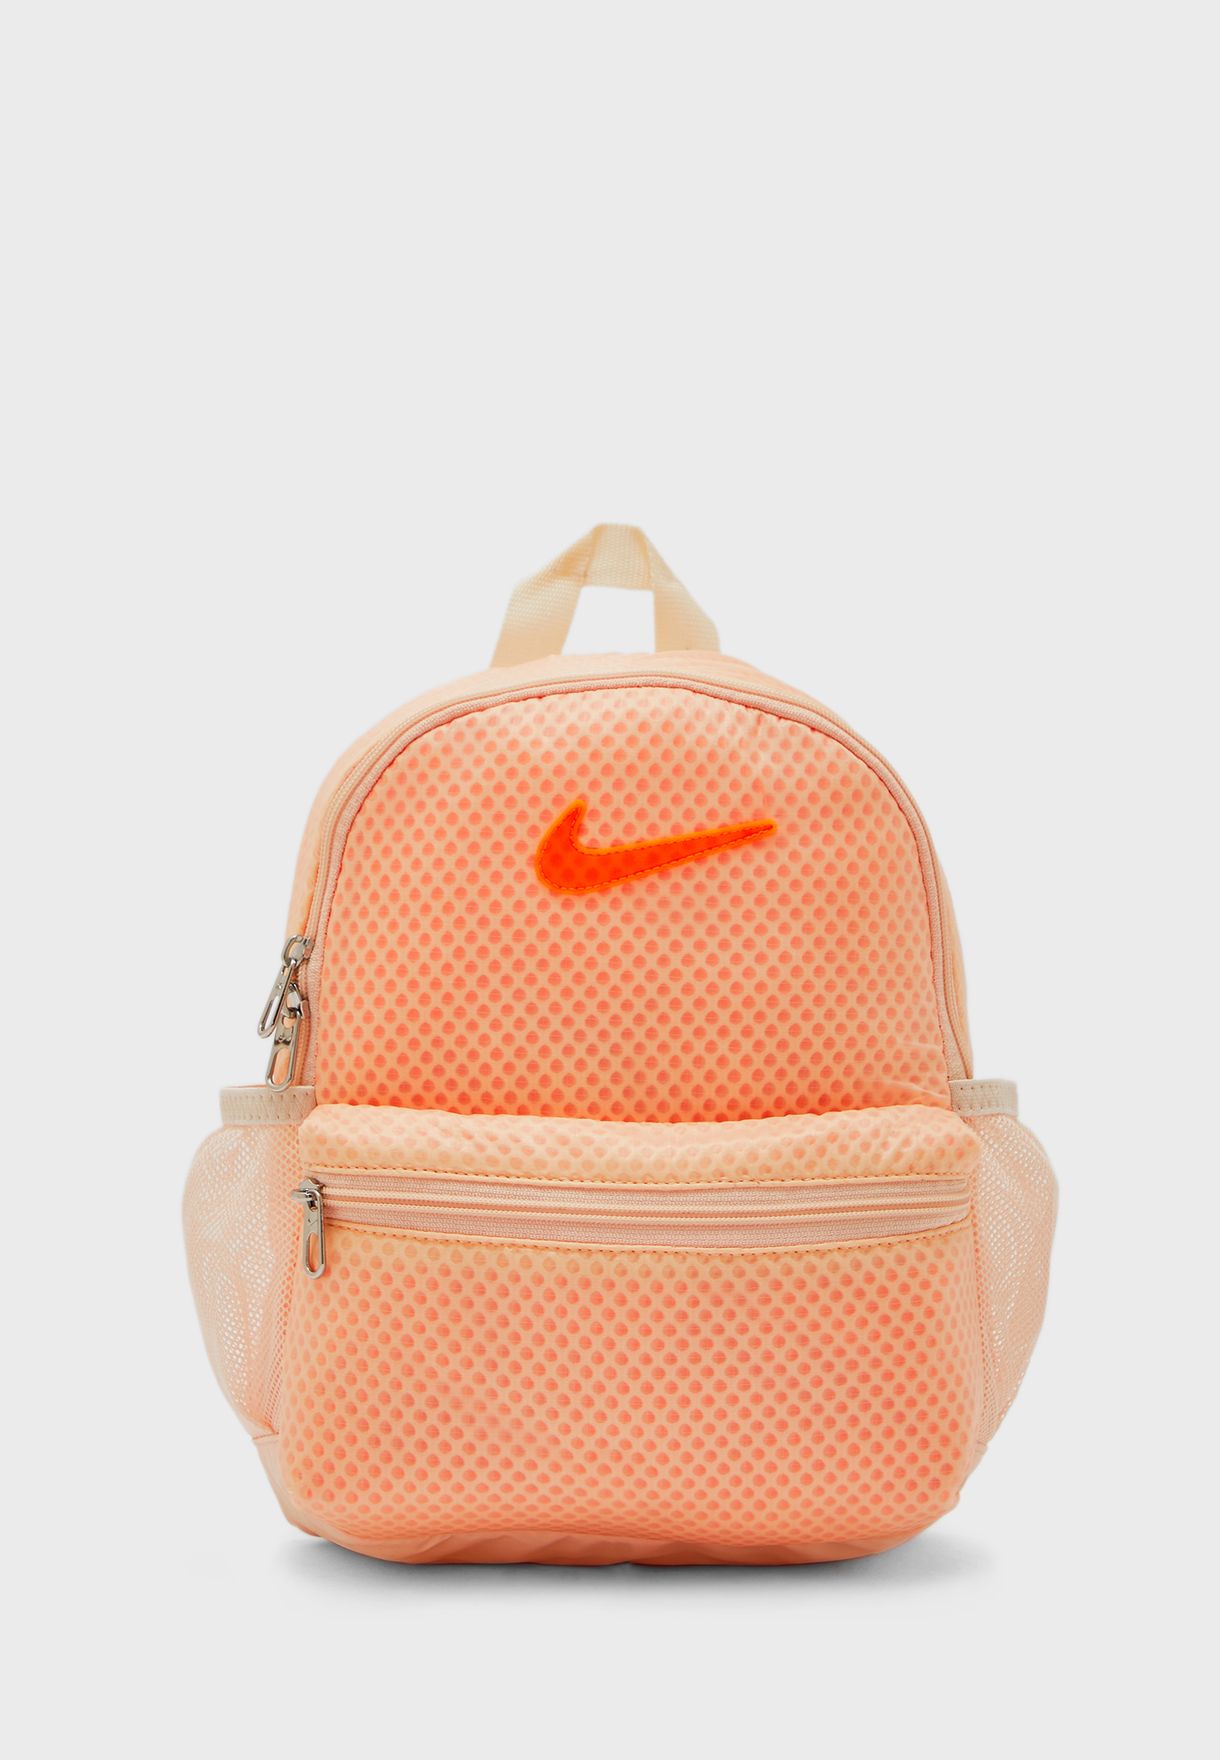 orange nike backpack